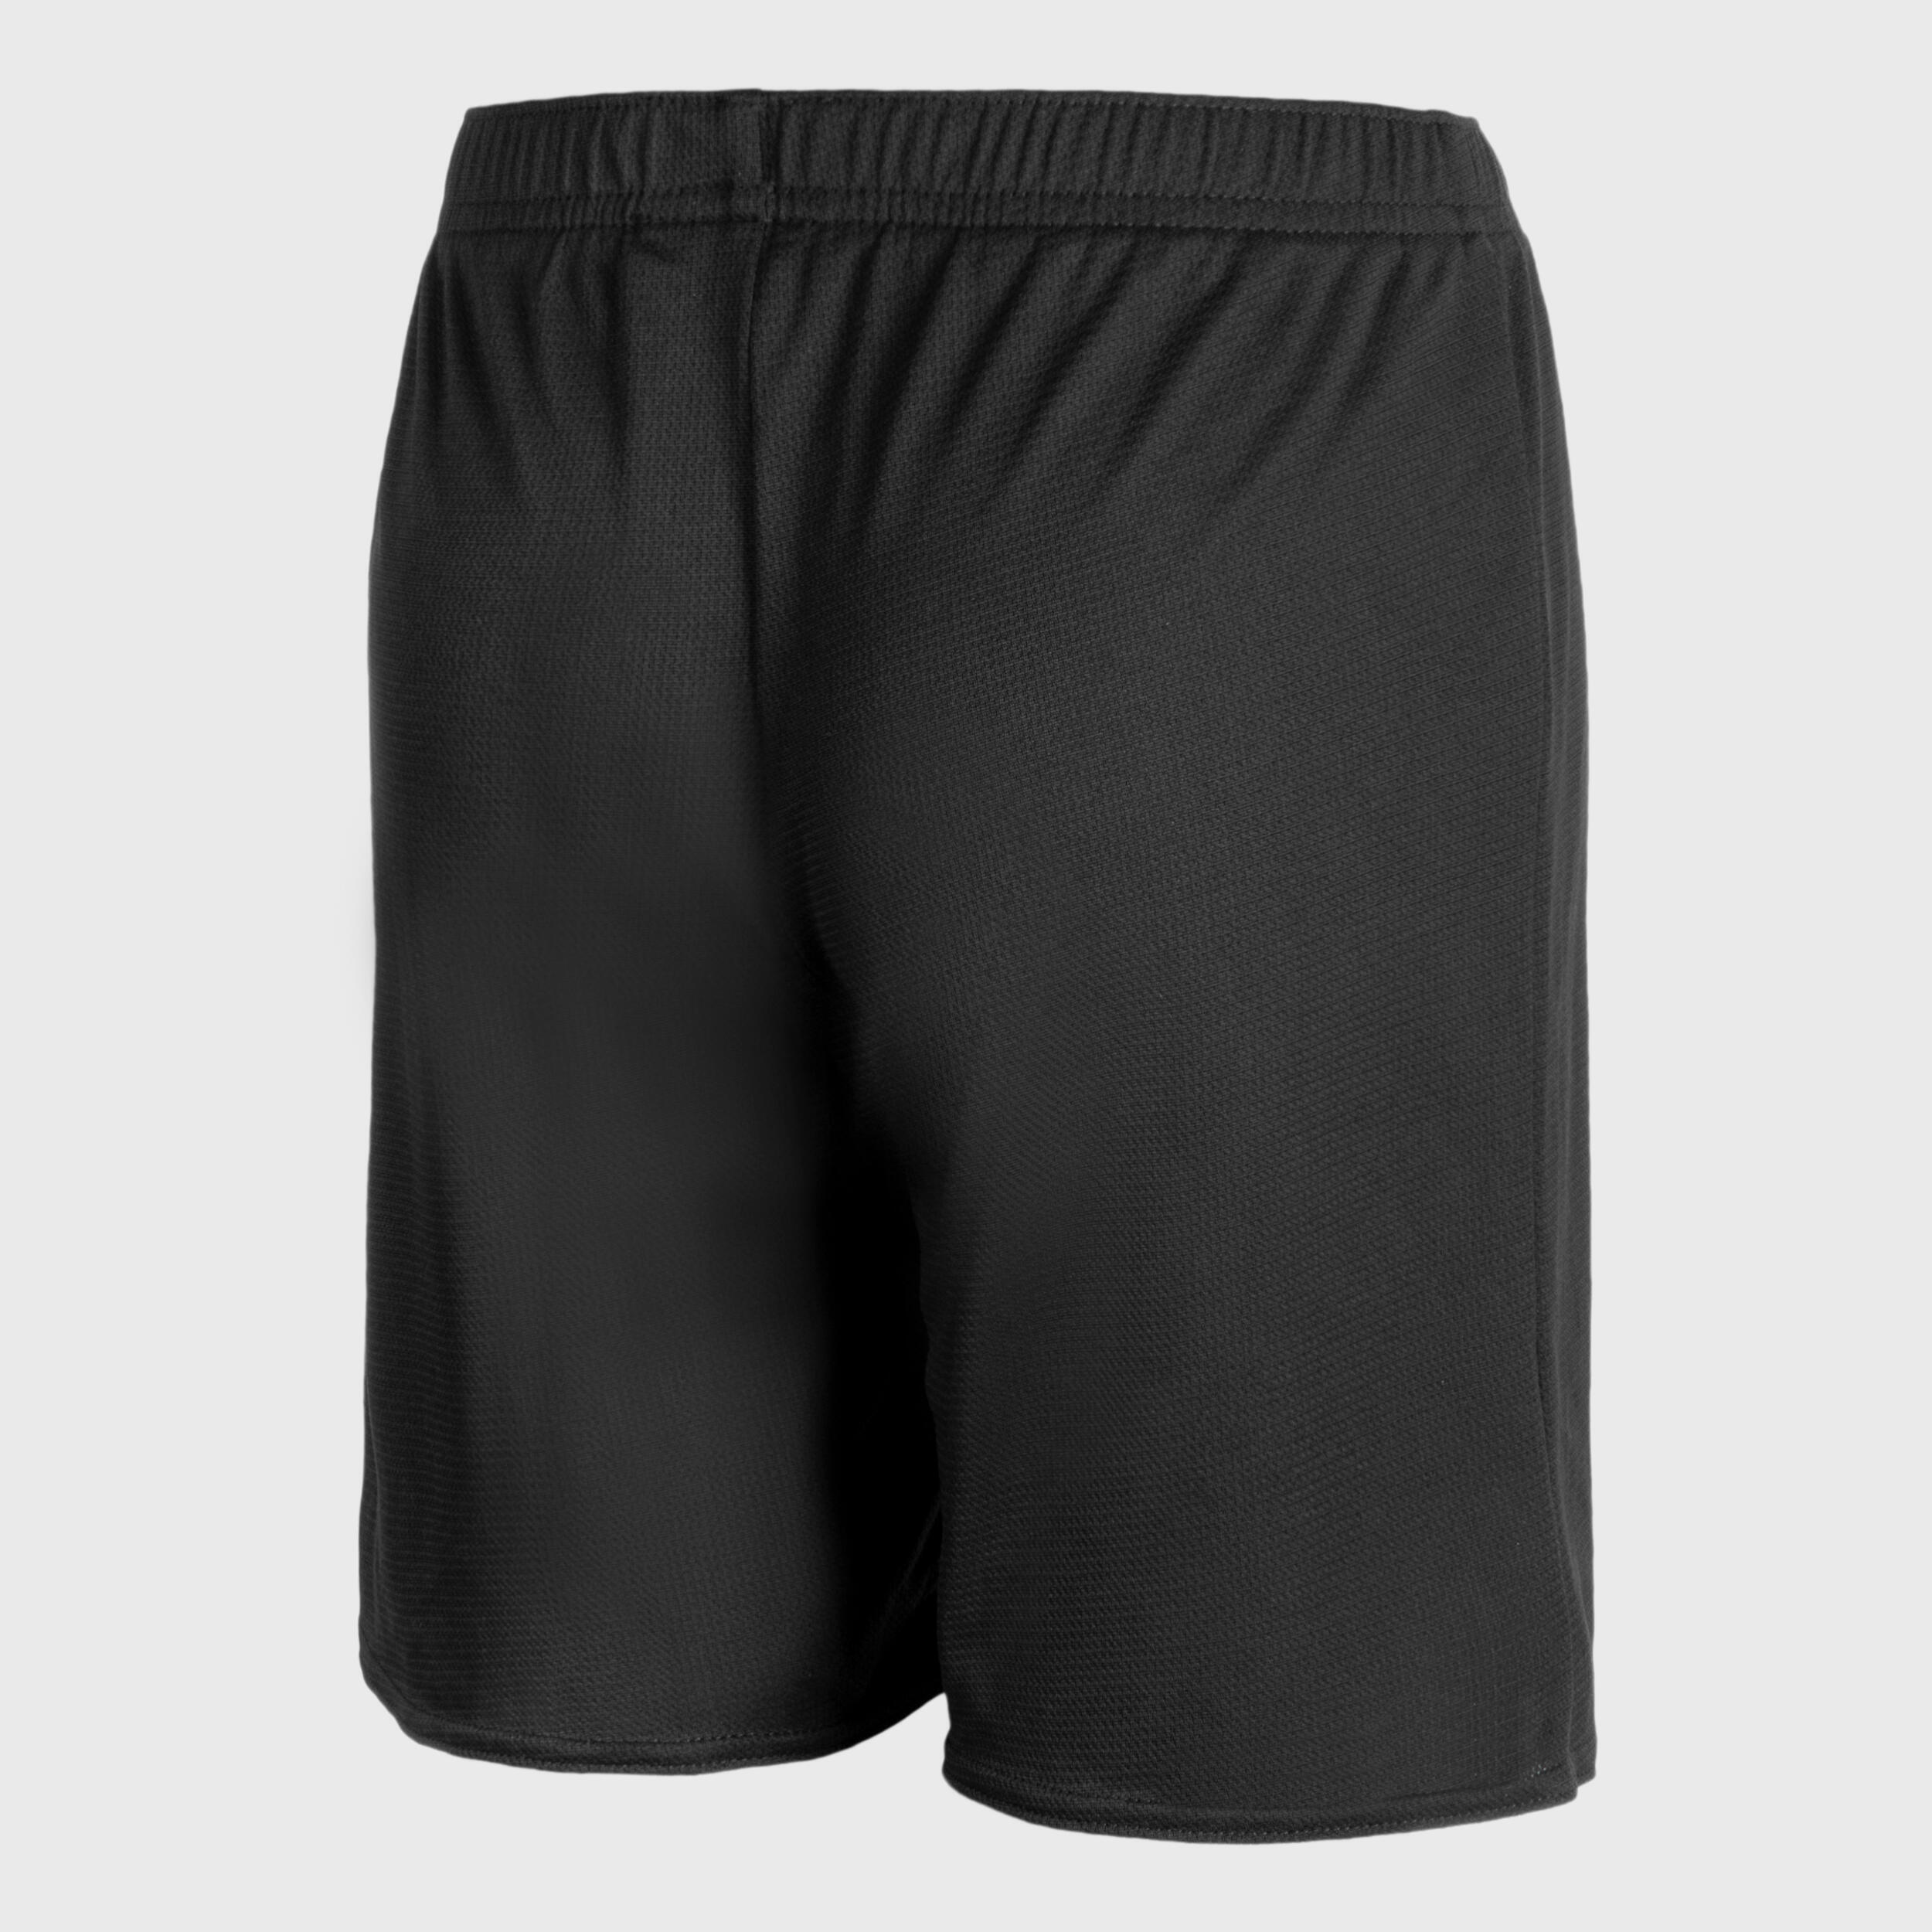 Kids' Basketball Shorts SH100 - Black 6/6